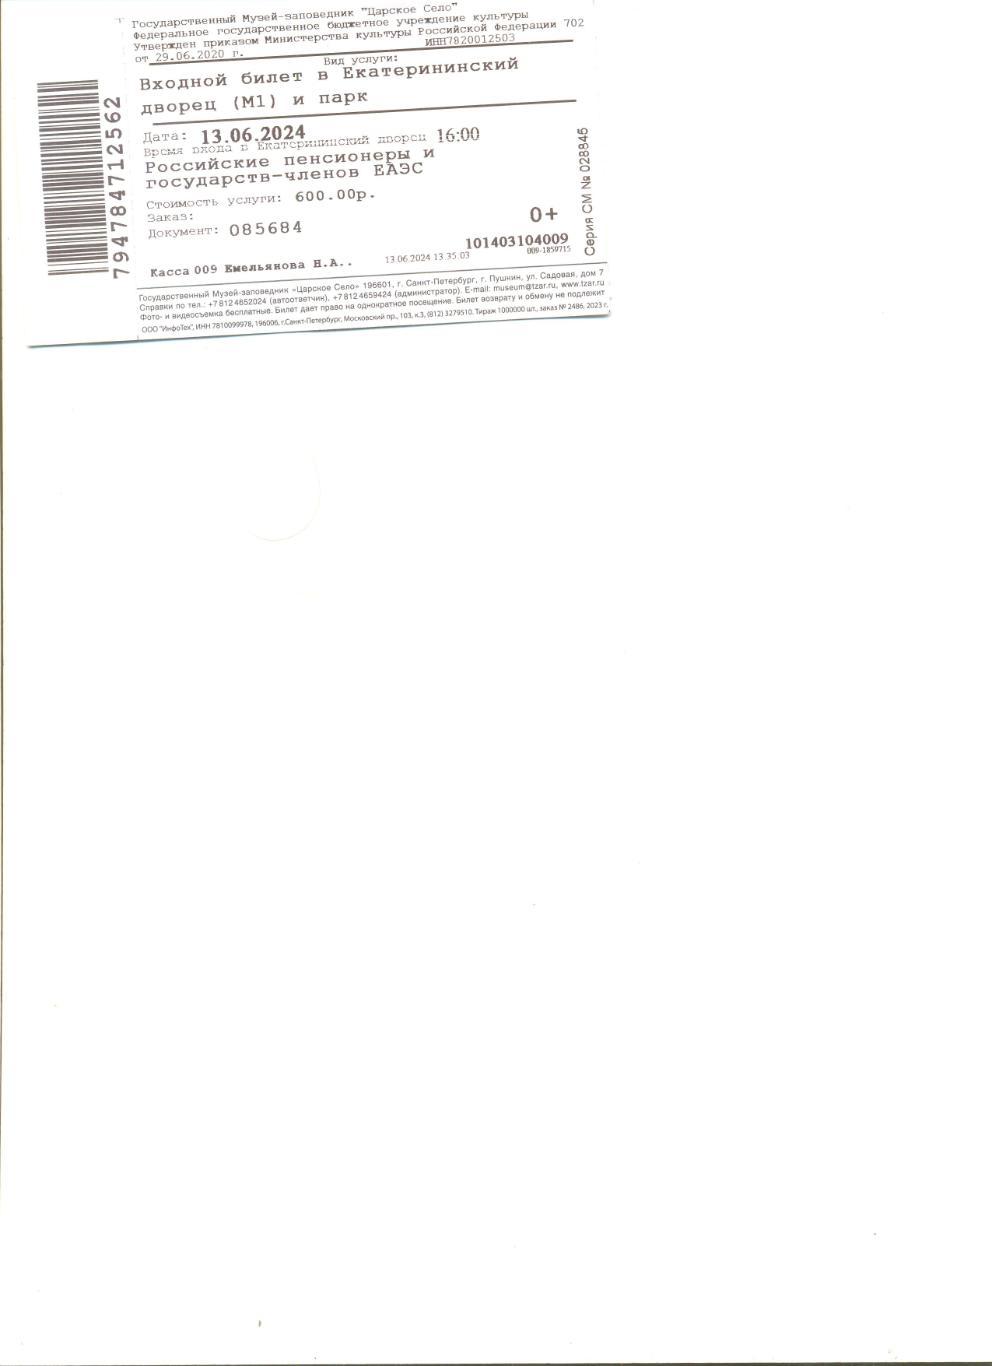 Билет в Екатерининский дворец Санкт-Петербурга (с контролем).